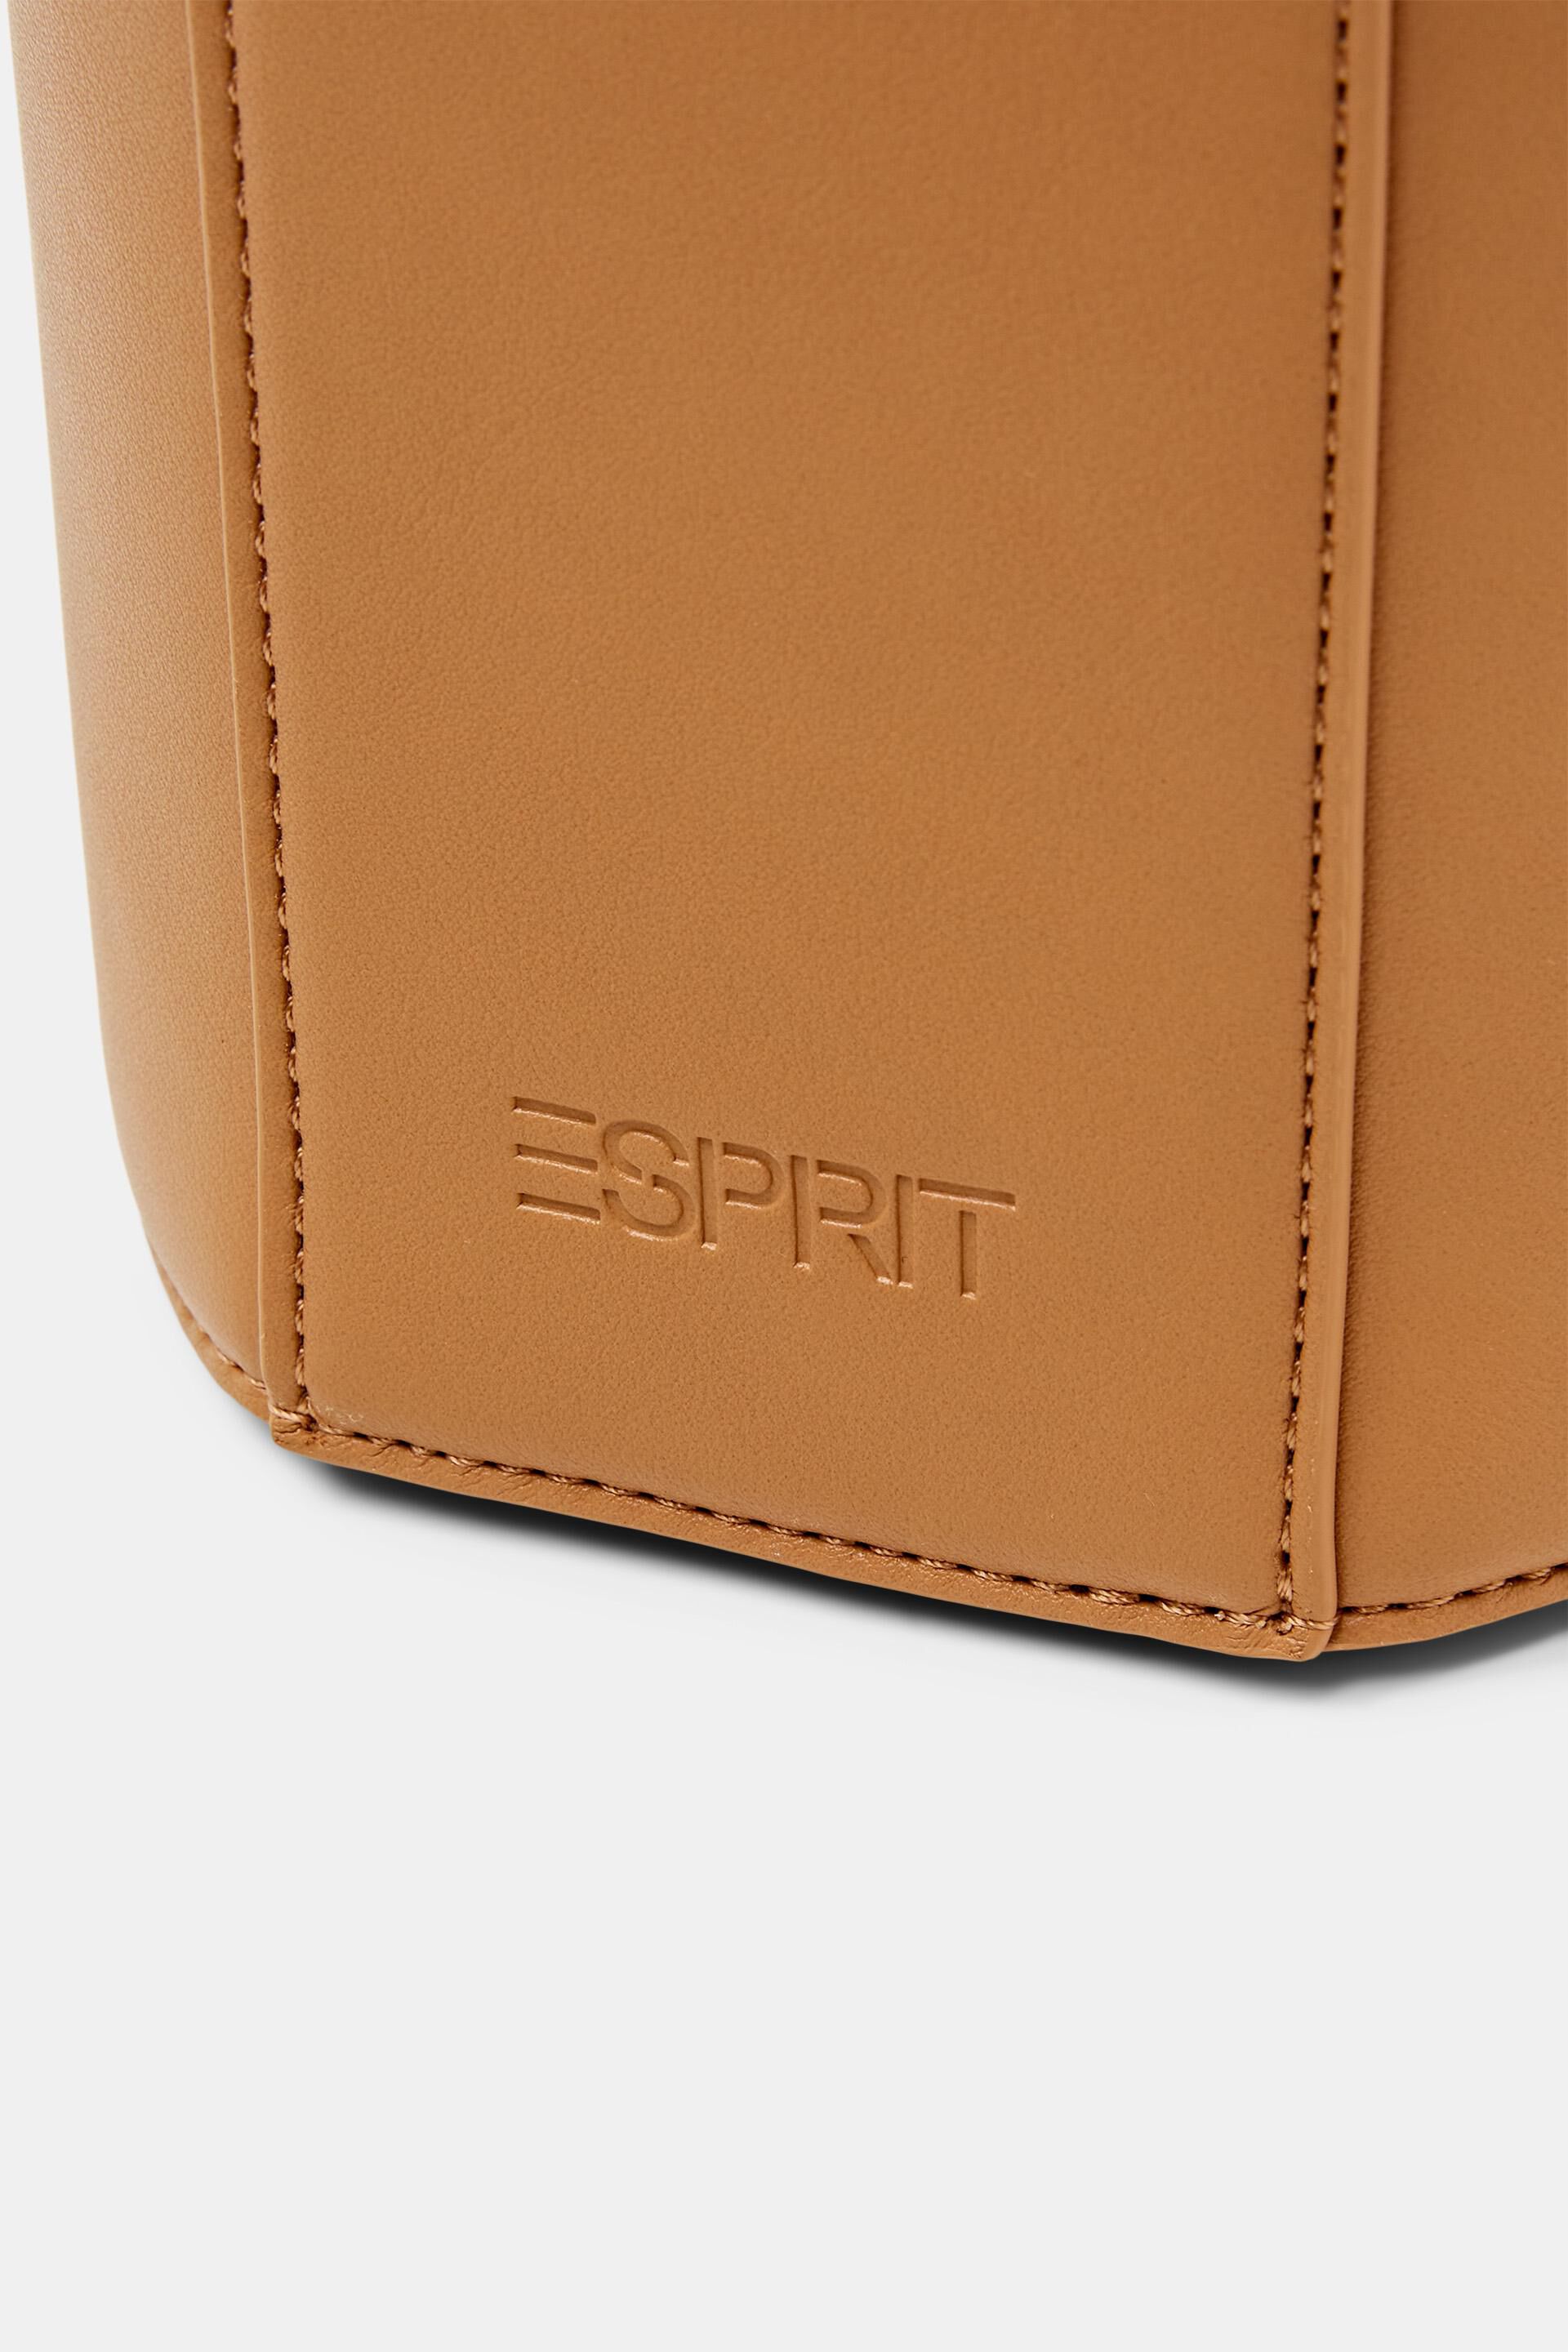 Esprit Online Store Zylindrische Beuteltasche